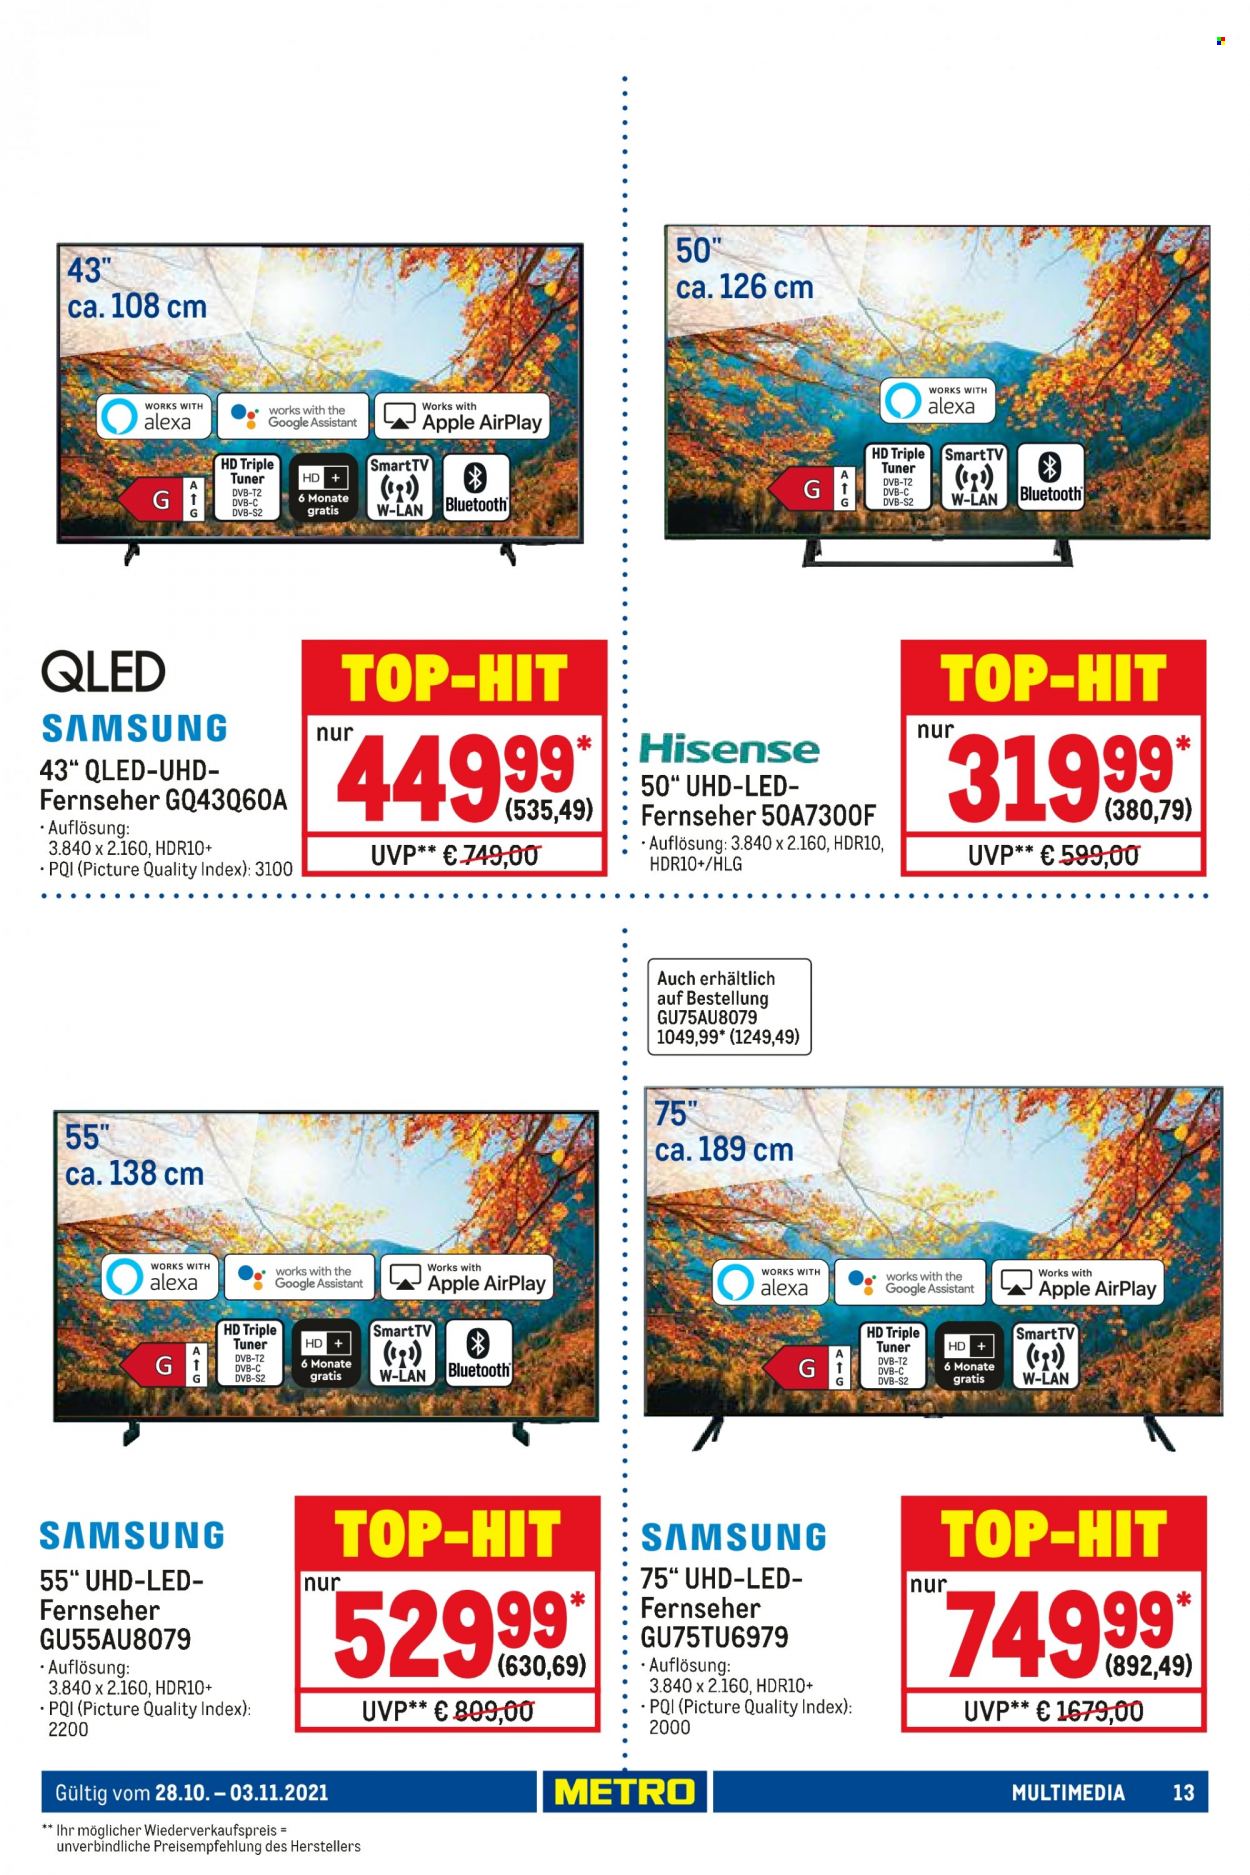 thumbnail - Prospekte Metro - 28.10.2021 - 3.11.2021 - Produkte in Aktion - Samsung, Hisense, Apple. Seite 13.